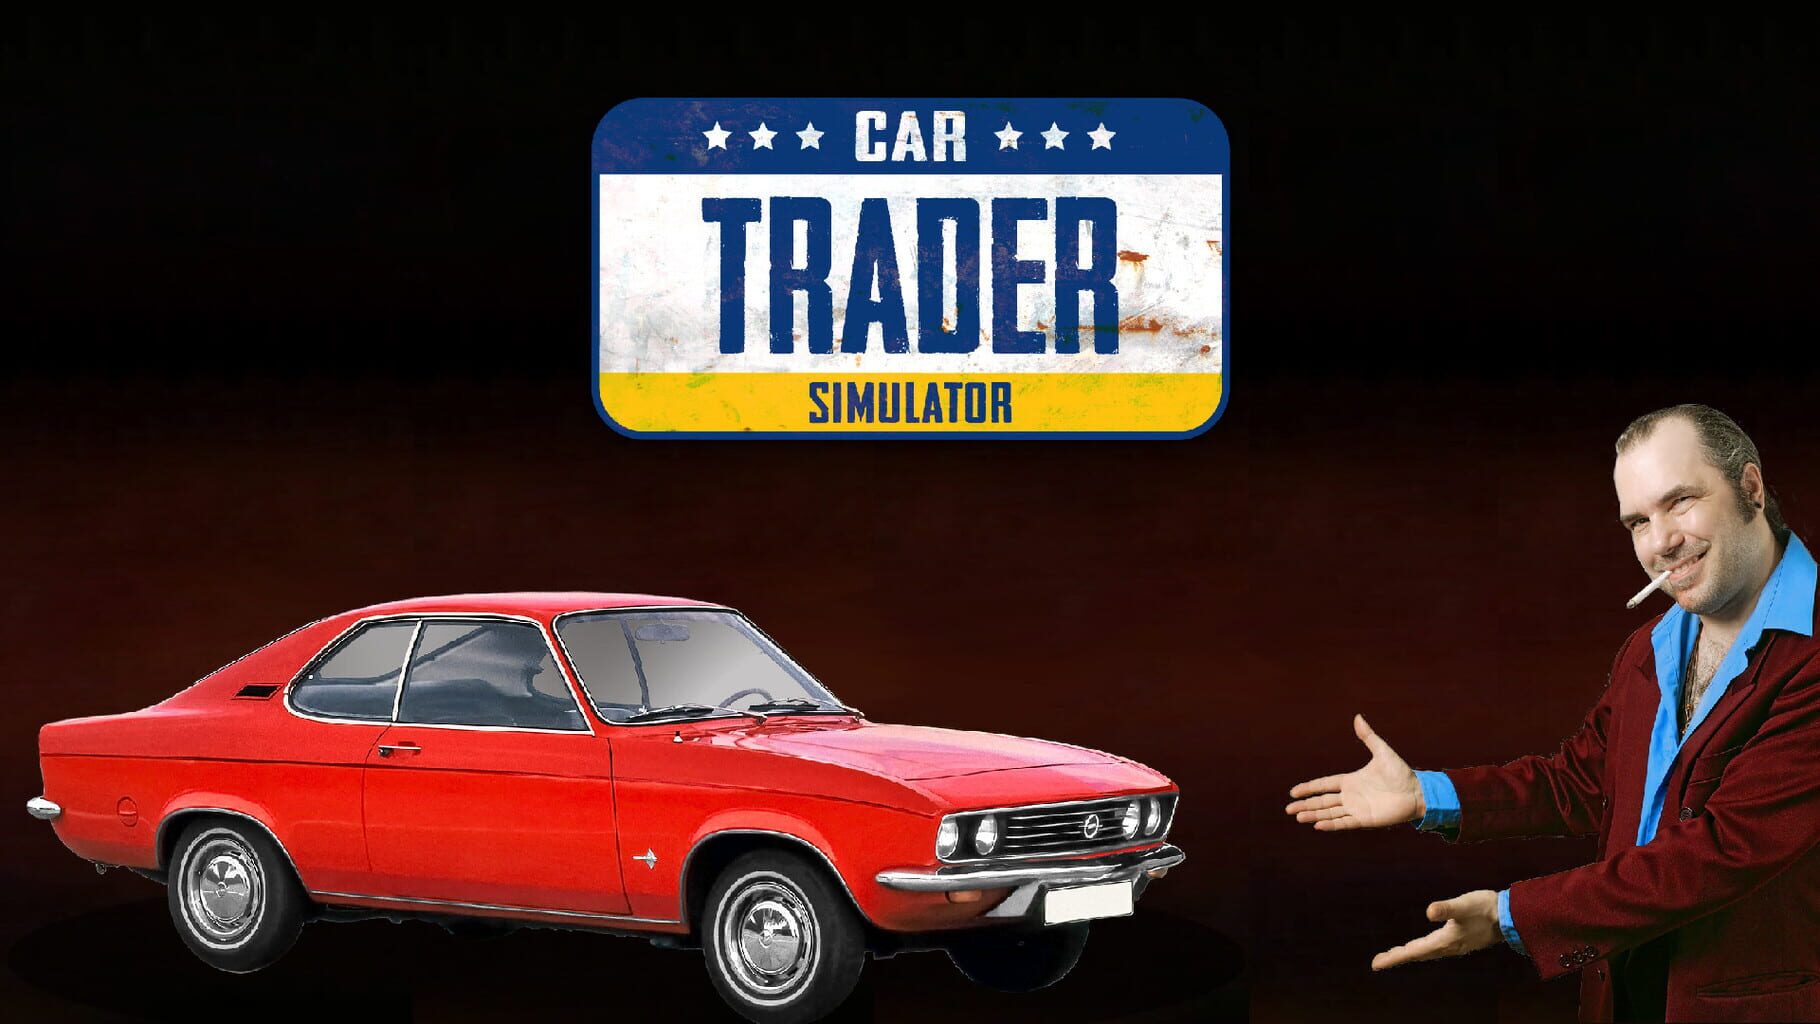 Car Trader Simulator artwork